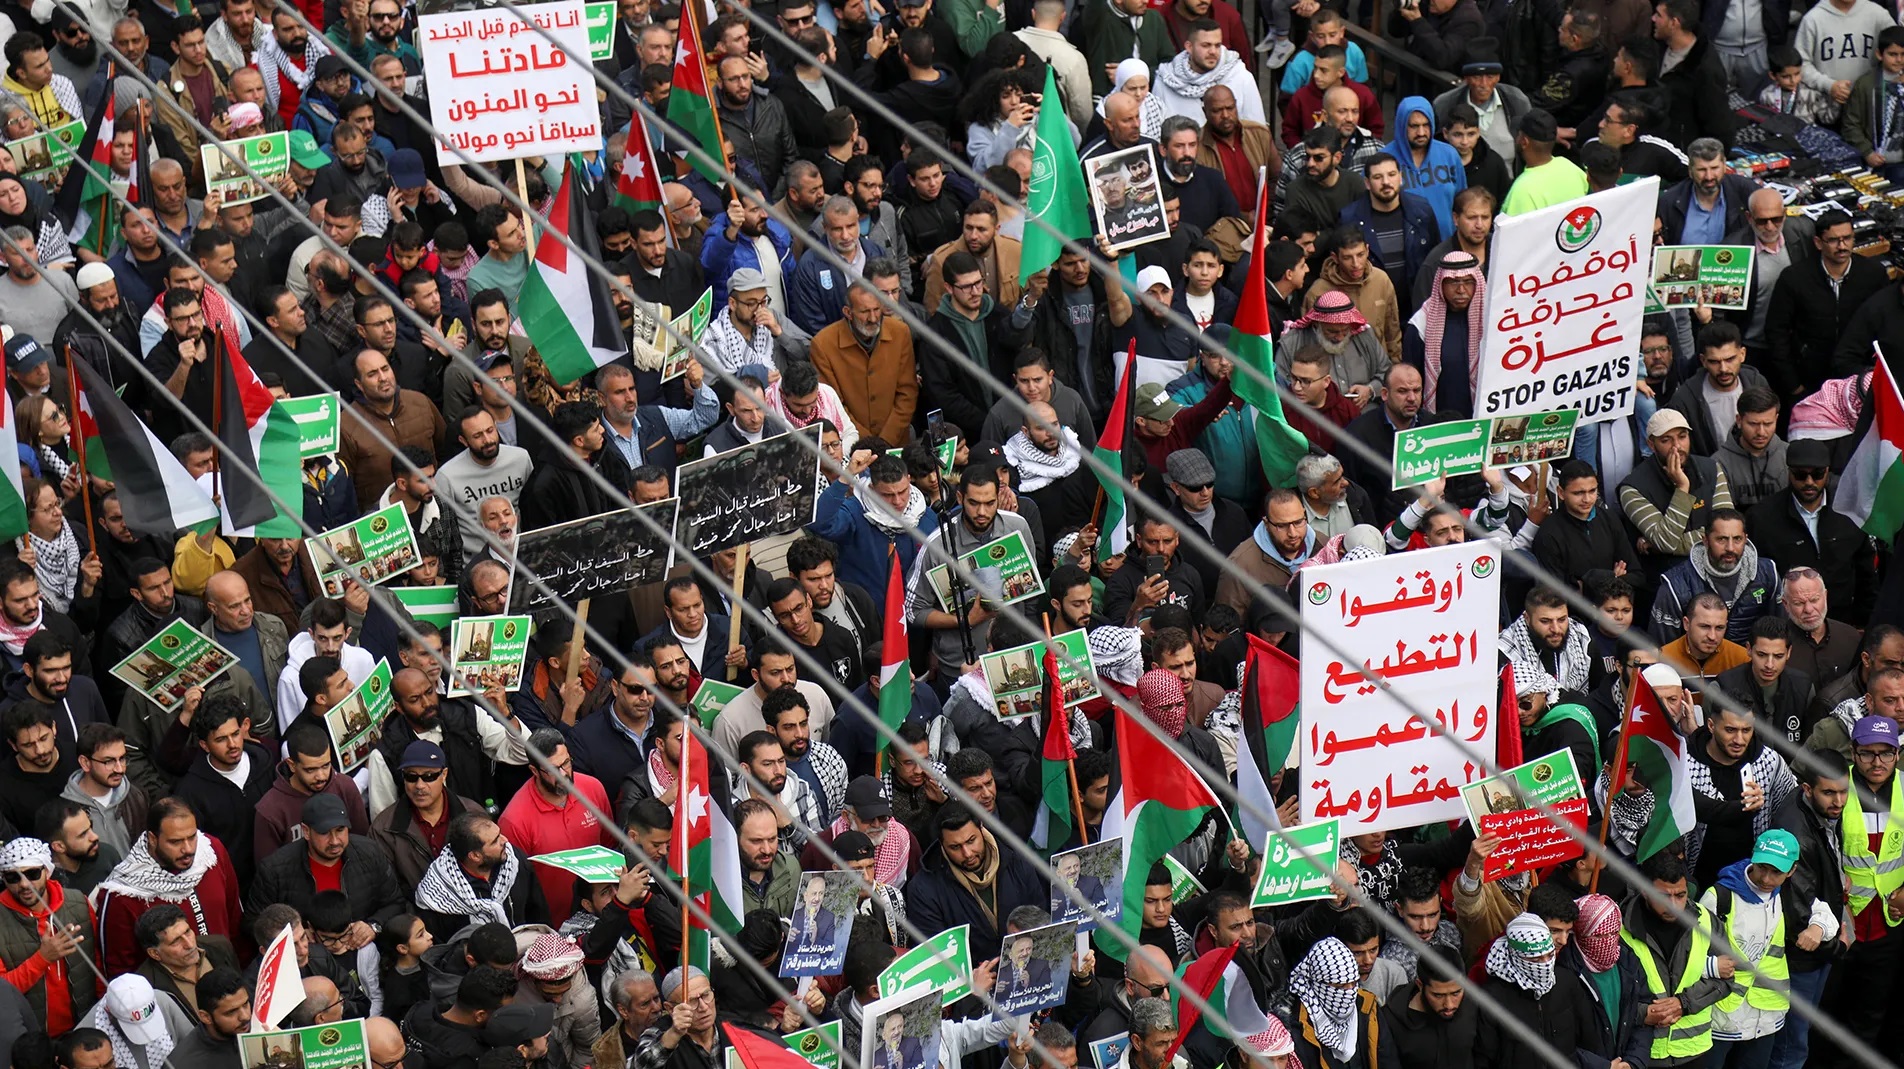 تظاهرات في الاردن دعما لغزة - ارشيف